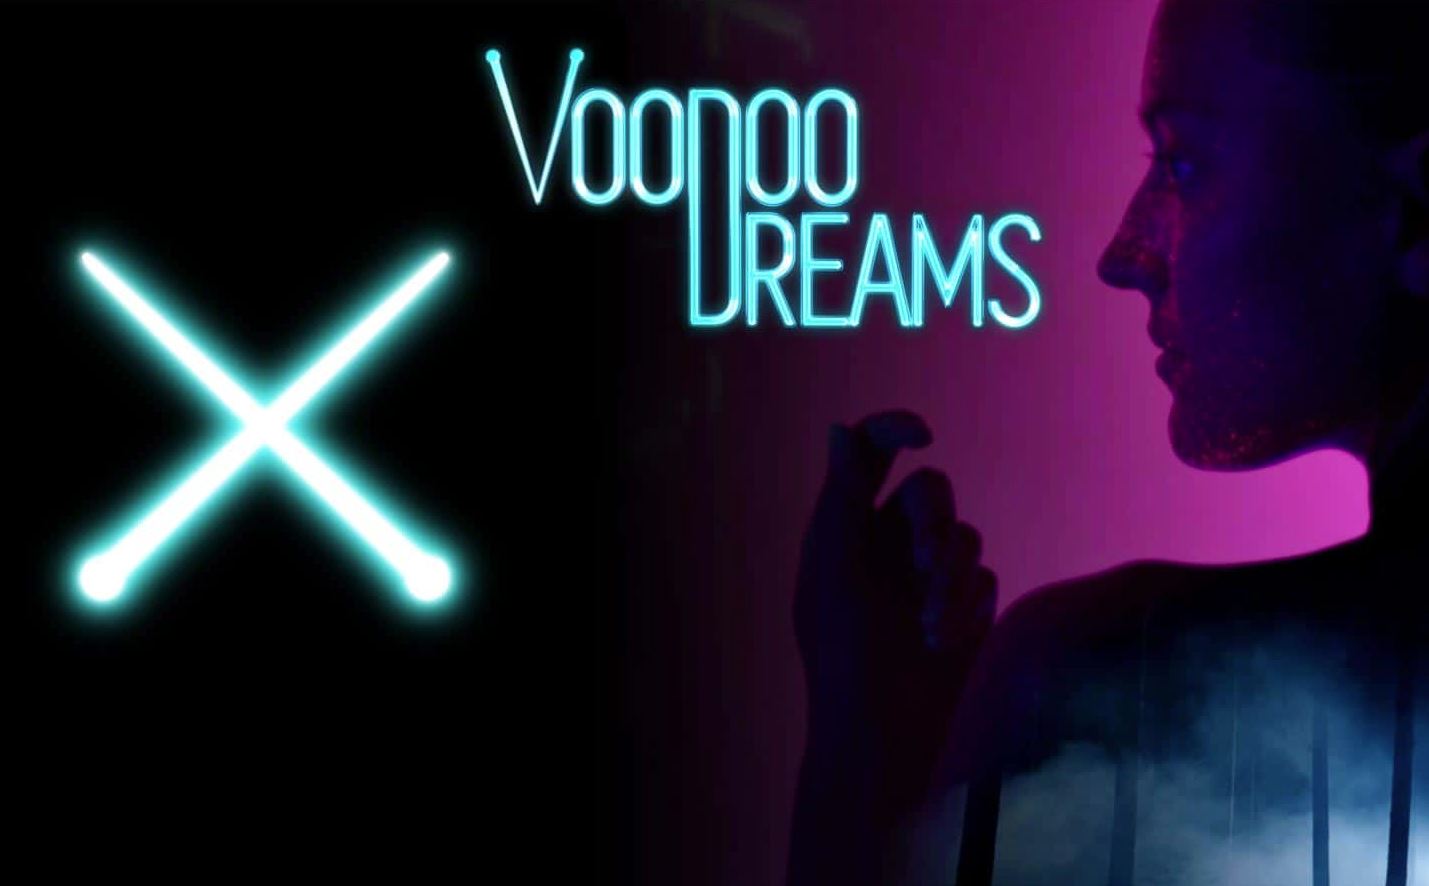 voodoo dreams casino erfahrungen